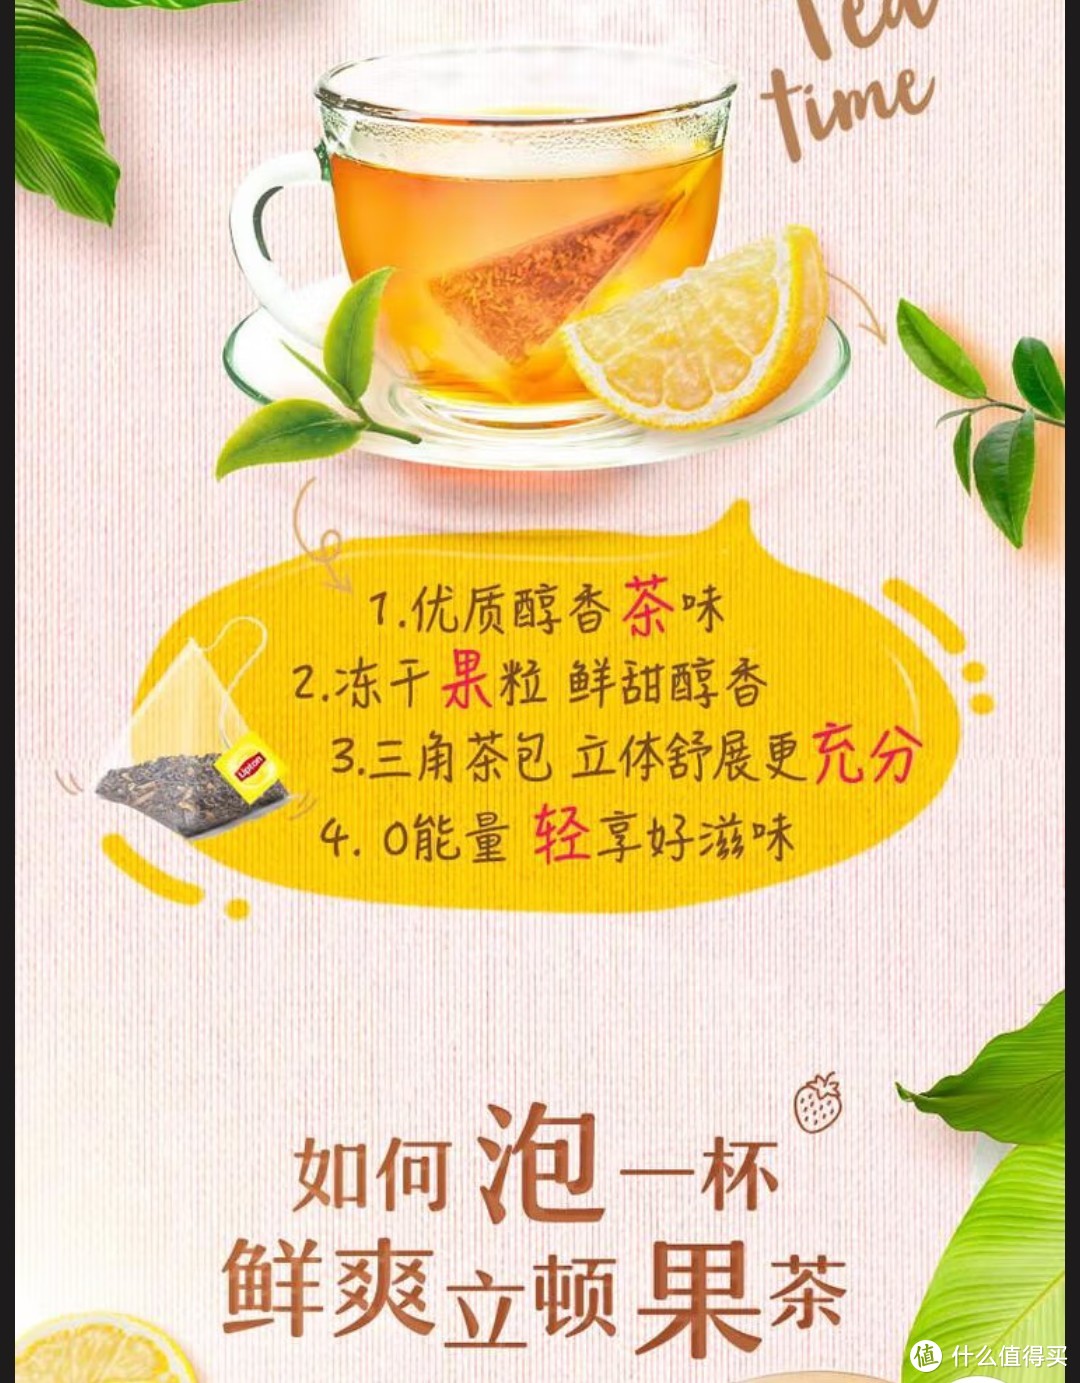 作为喝茶入门产品，袋泡茶产品简单介绍，适合收藏，看看产品在适合怎样饮用。